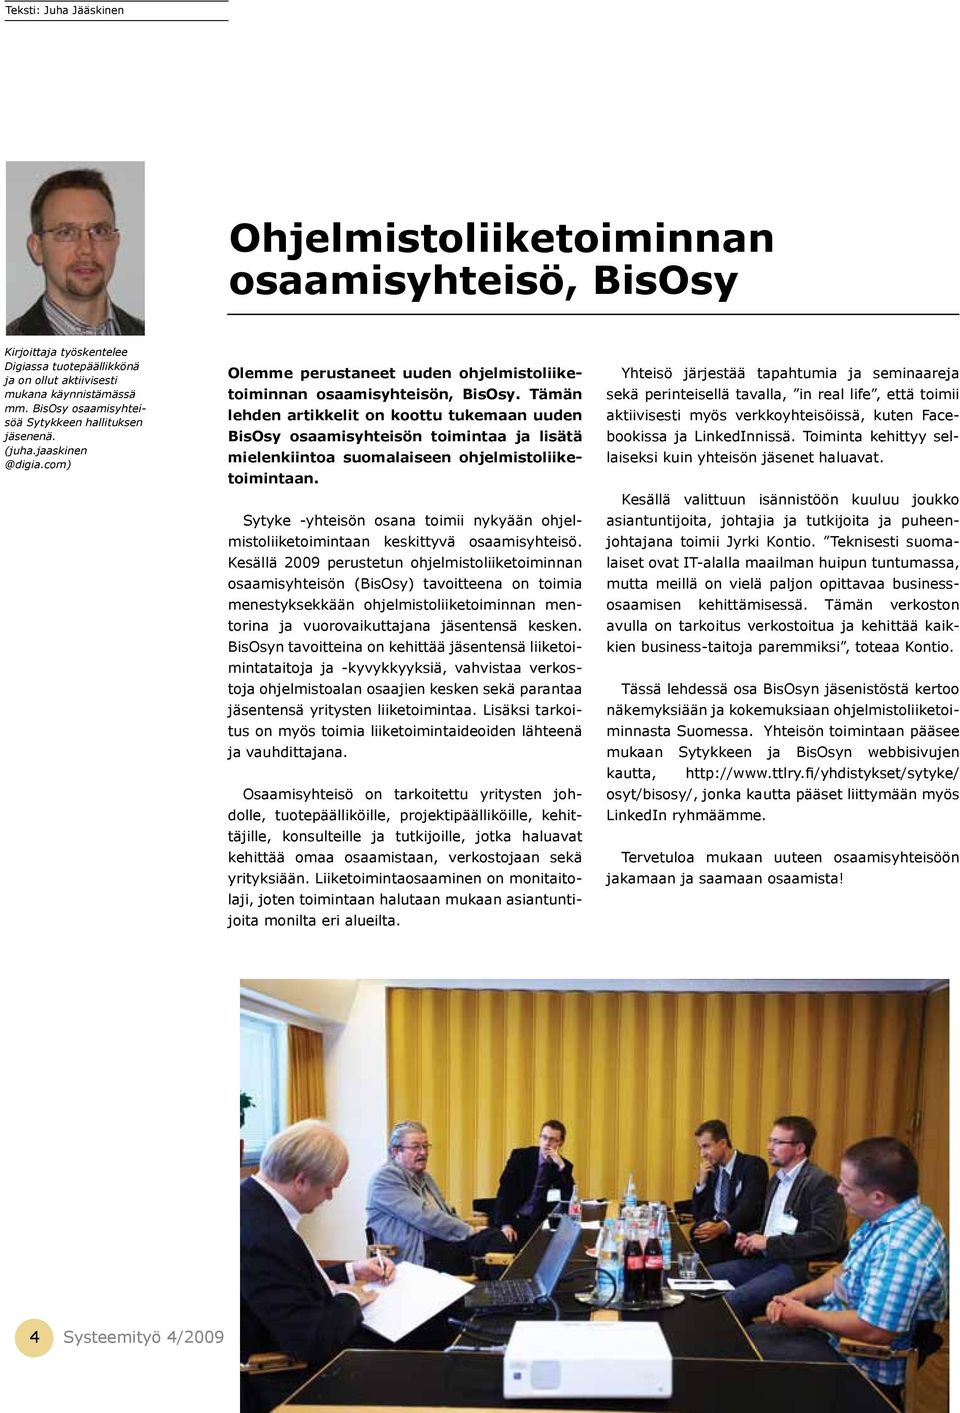 Tämän lehden artikkelit on koottu tukemaan uuden BisOsy osaamisyhteisön toimintaa ja lisätä mielenkiintoa suomalaiseen ohjelmistoliiketoimintaan.